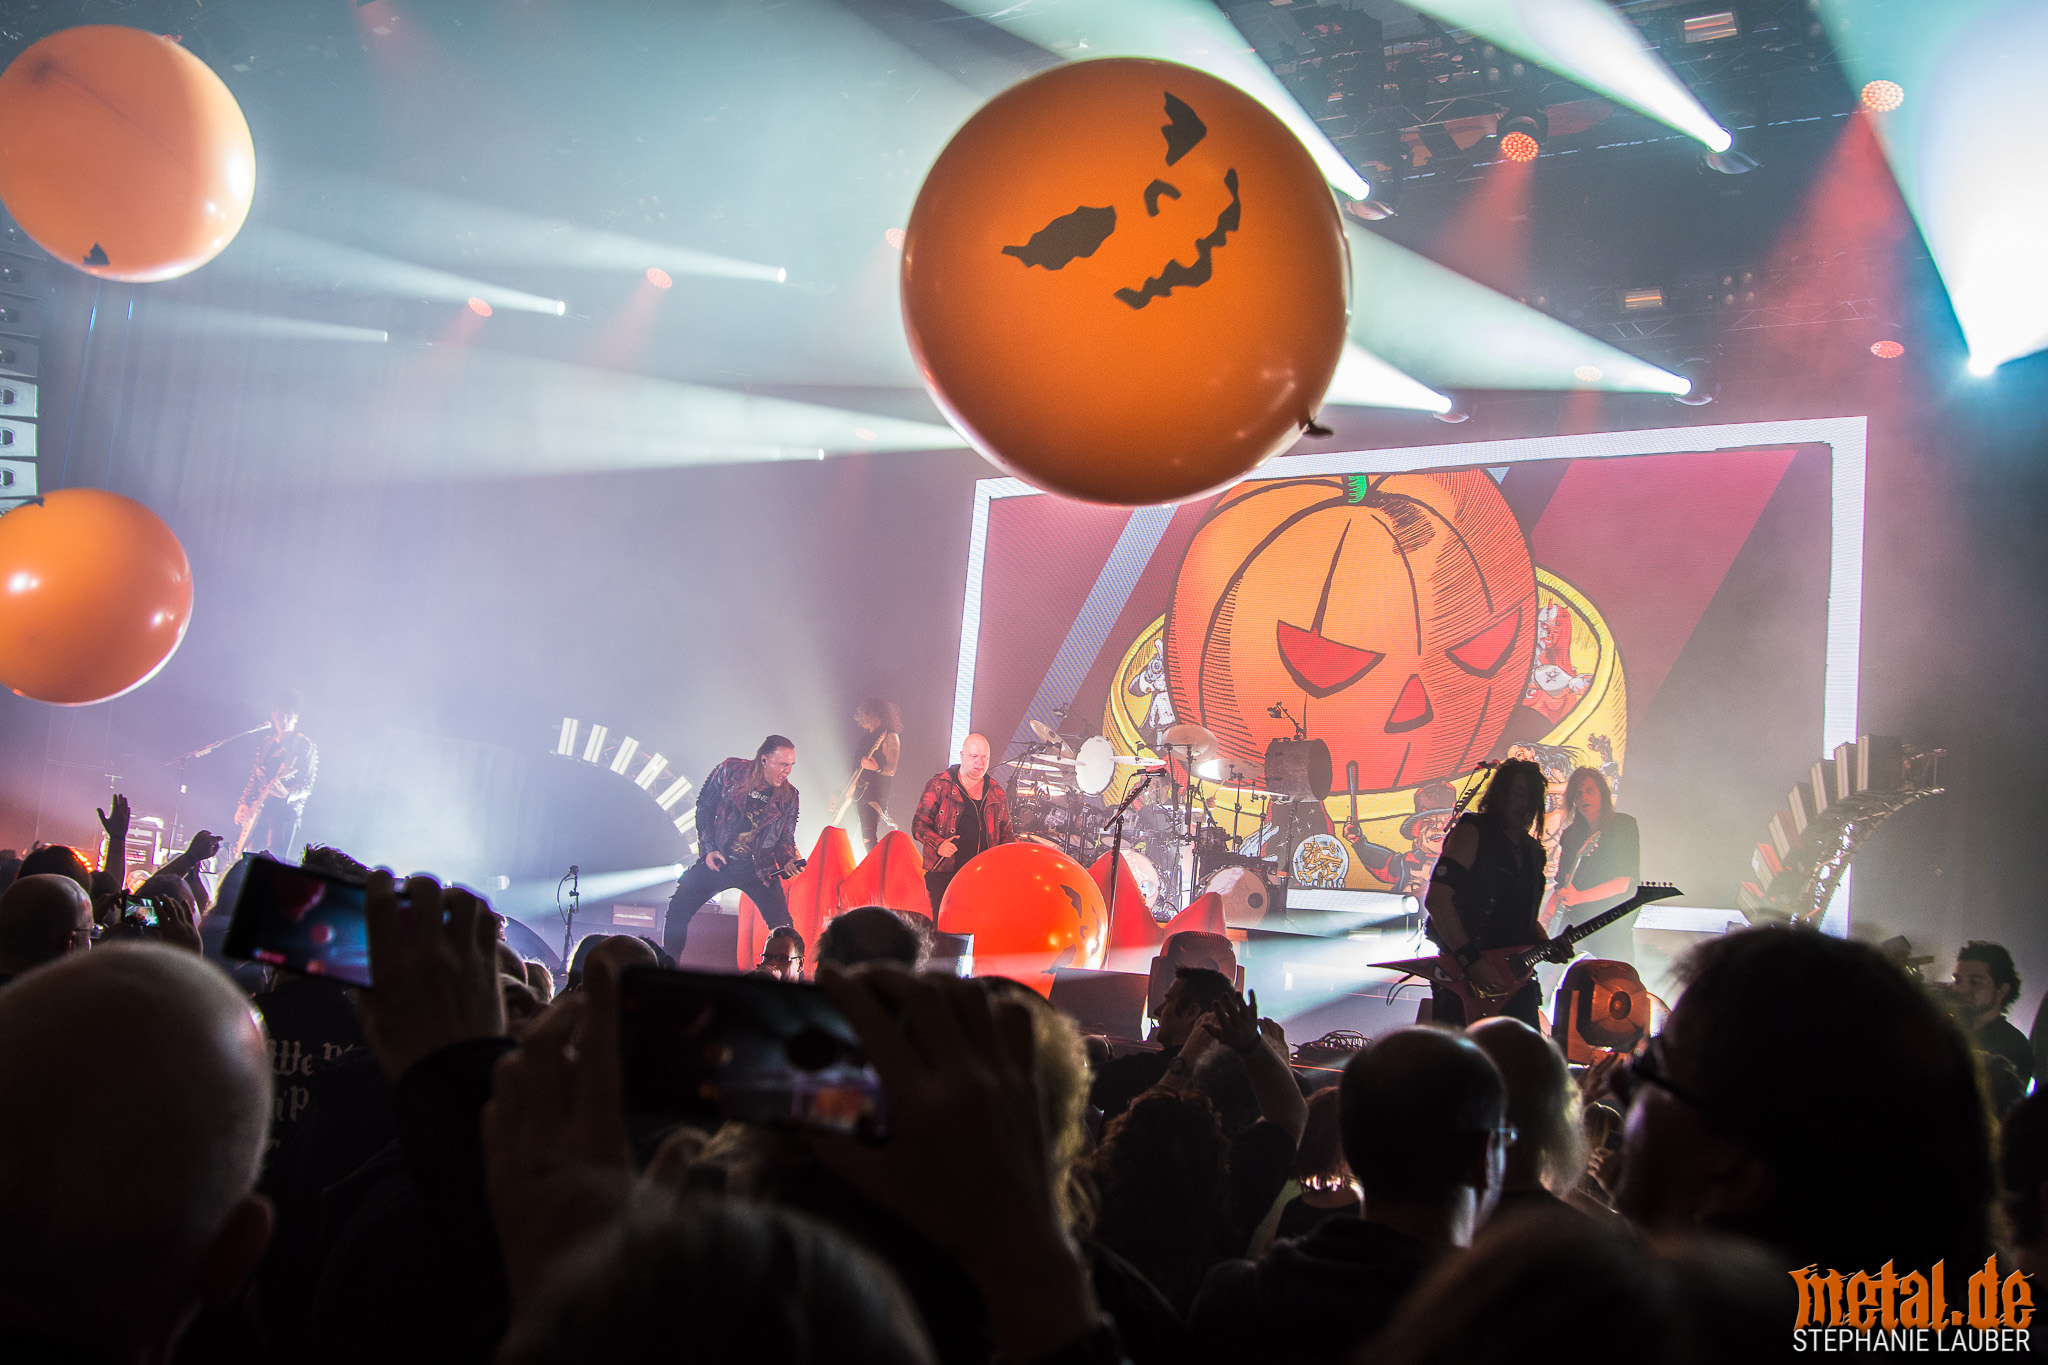 Konzertfoto von Helloween Pumpkins United auf dem Knock Out Festival 2018 in Karlsruhe